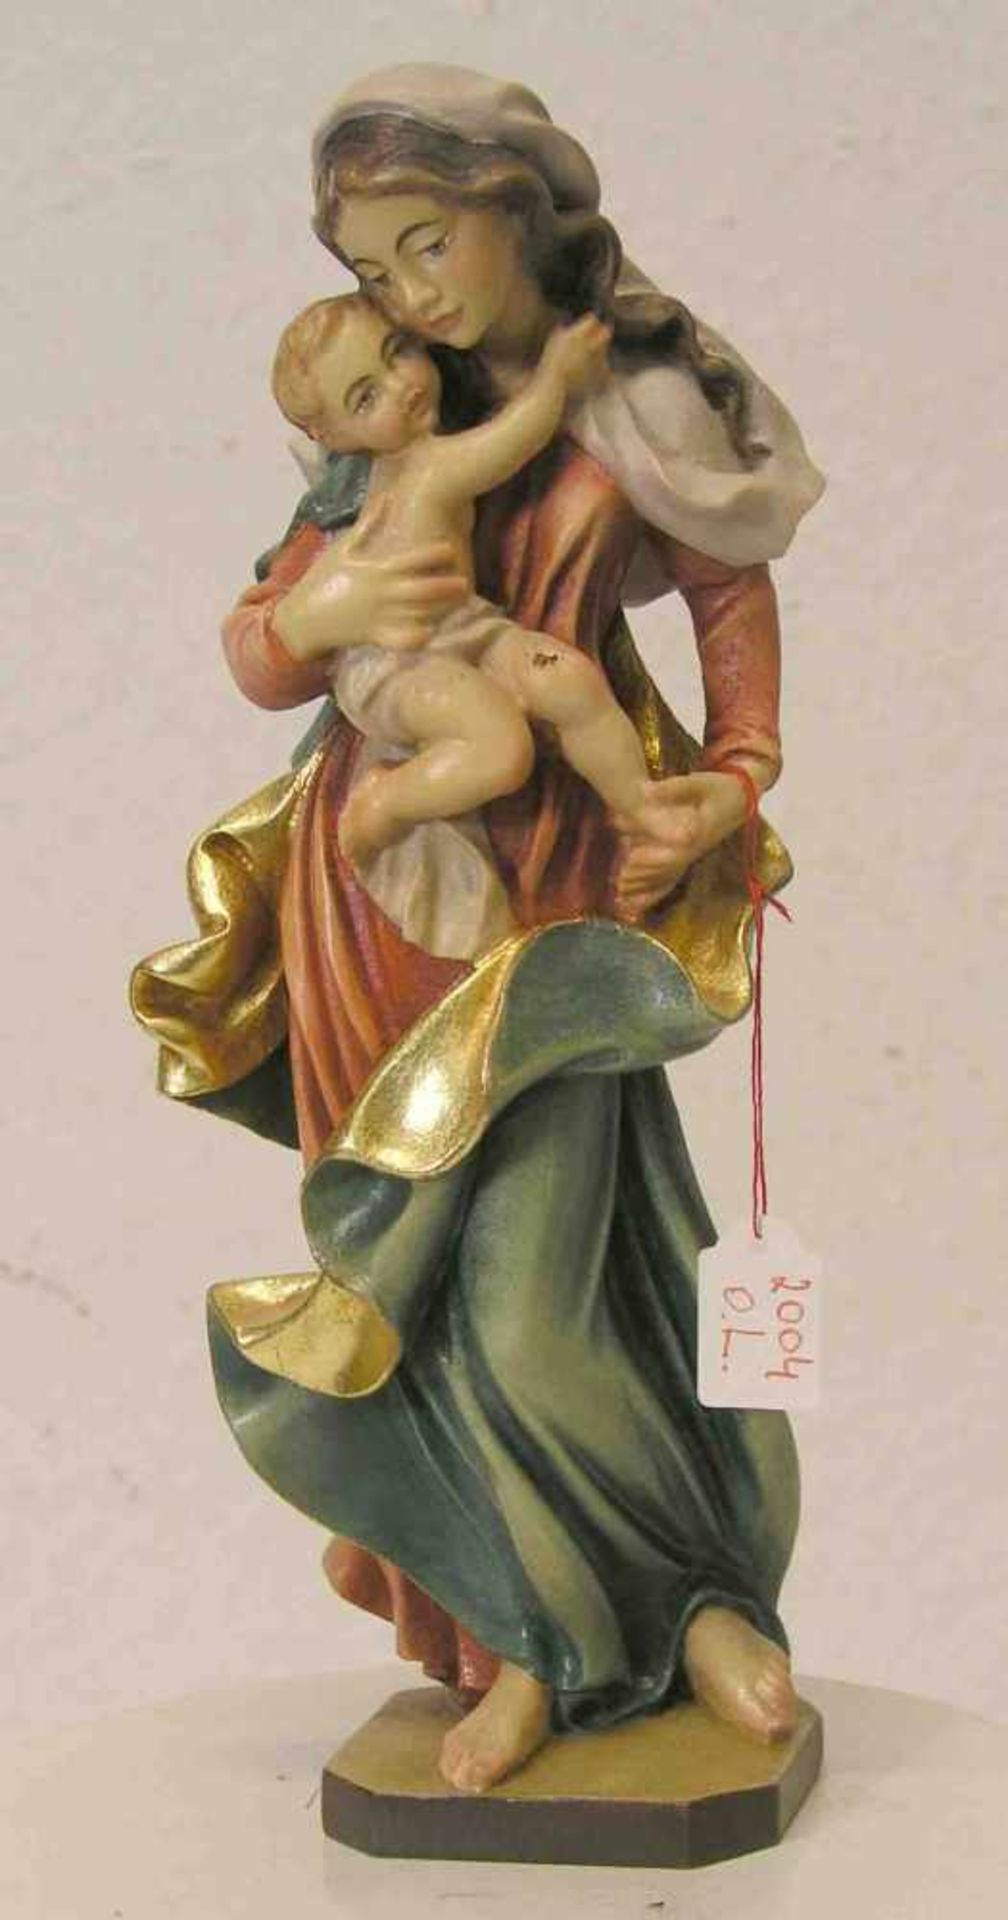 Madonna mit Kind. Holz geschnitzt, farbig gefasst, neuzeitlich. Höhe: 24cm.